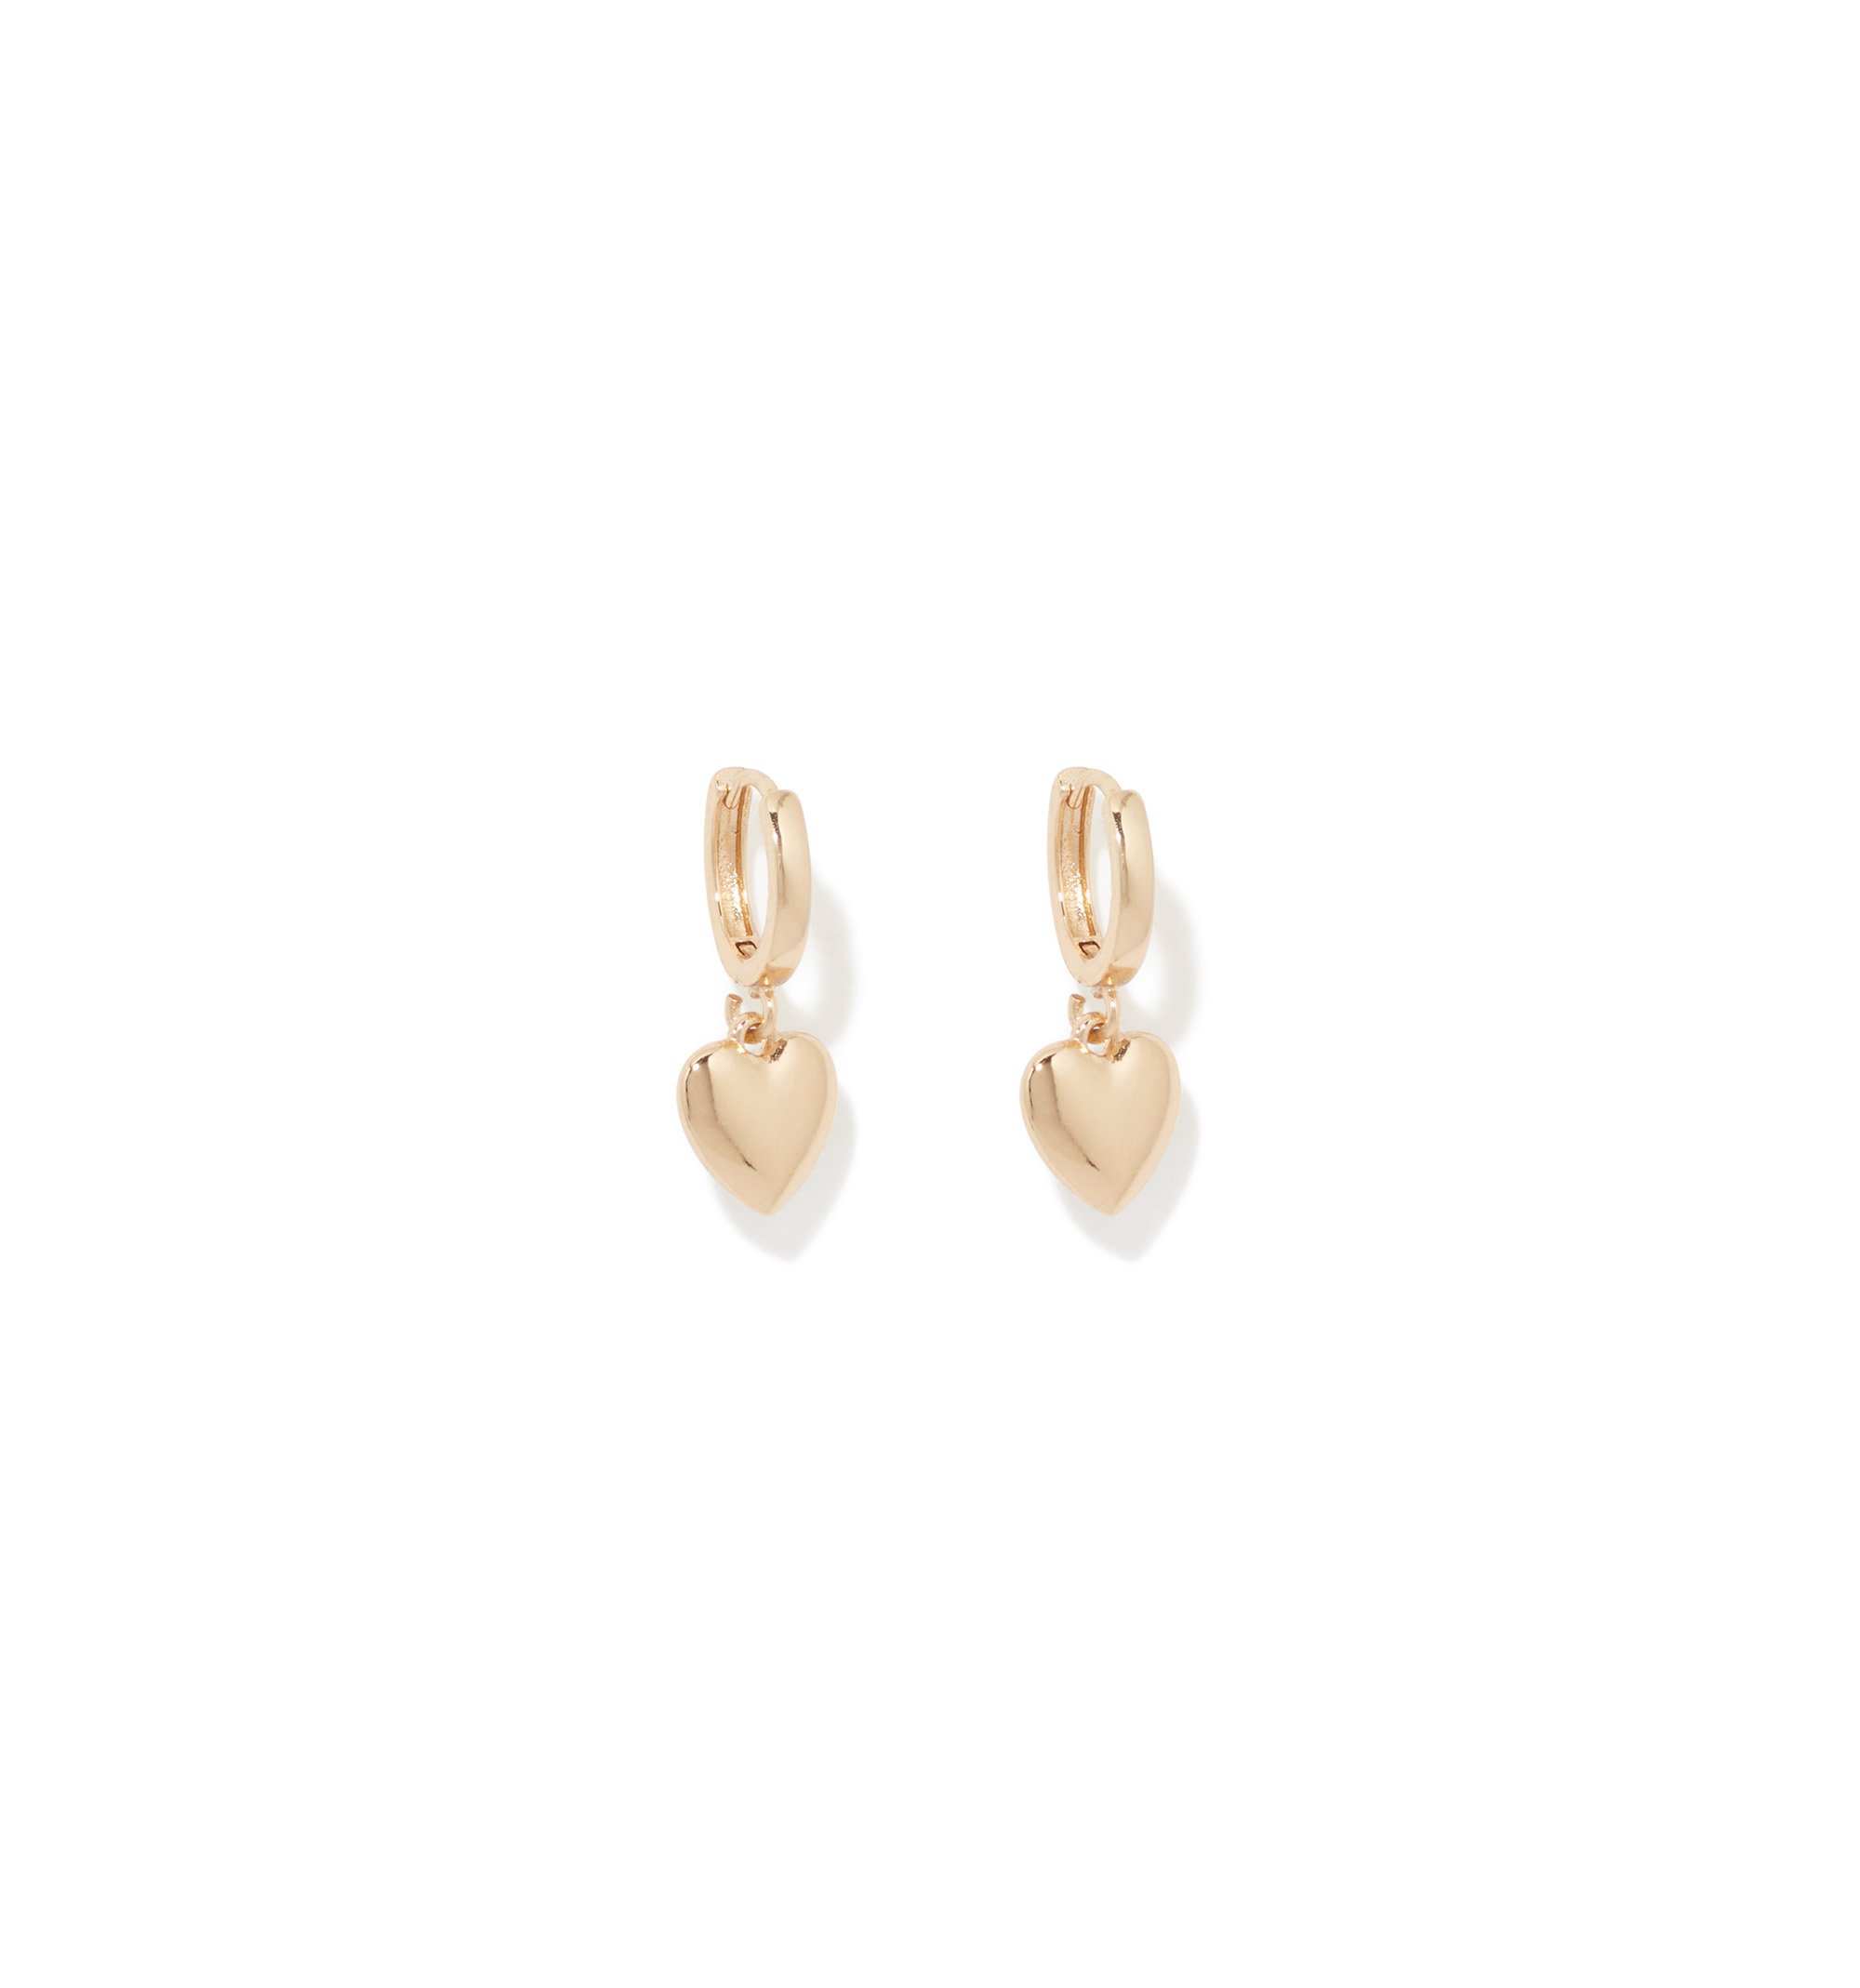 Heart-Shaped Hoop Earrings | Hoop earrings, Earrings, Big earrings